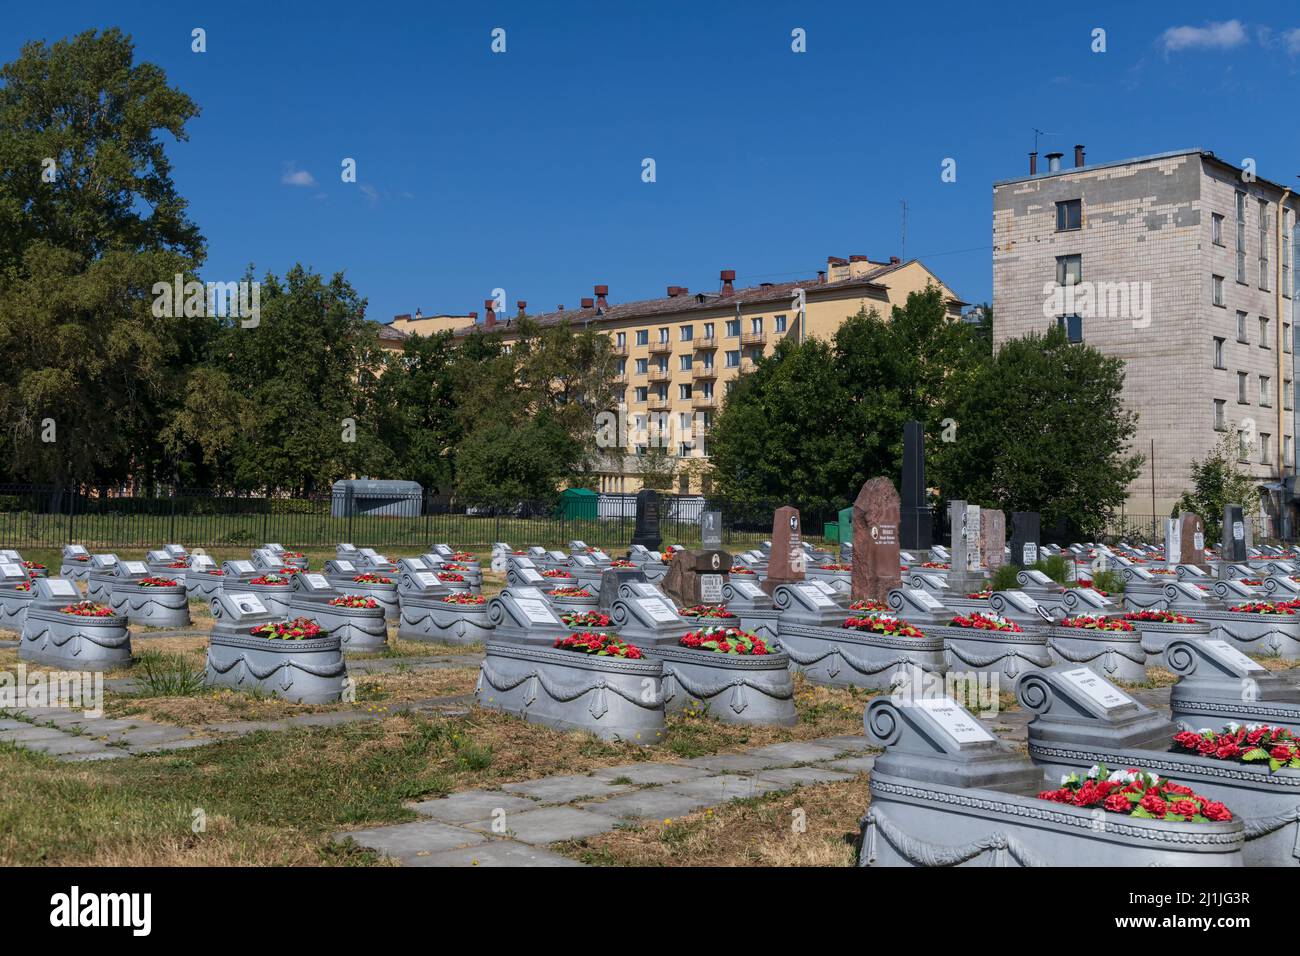 Sankt Petersburg, Russland - 18. Juli 2021: Militärischer Gedenkfriedhof des Zweiten Weltkriegs während der Belagerung von Leningrad in der Nähe von Wohngebäuden Stockfoto